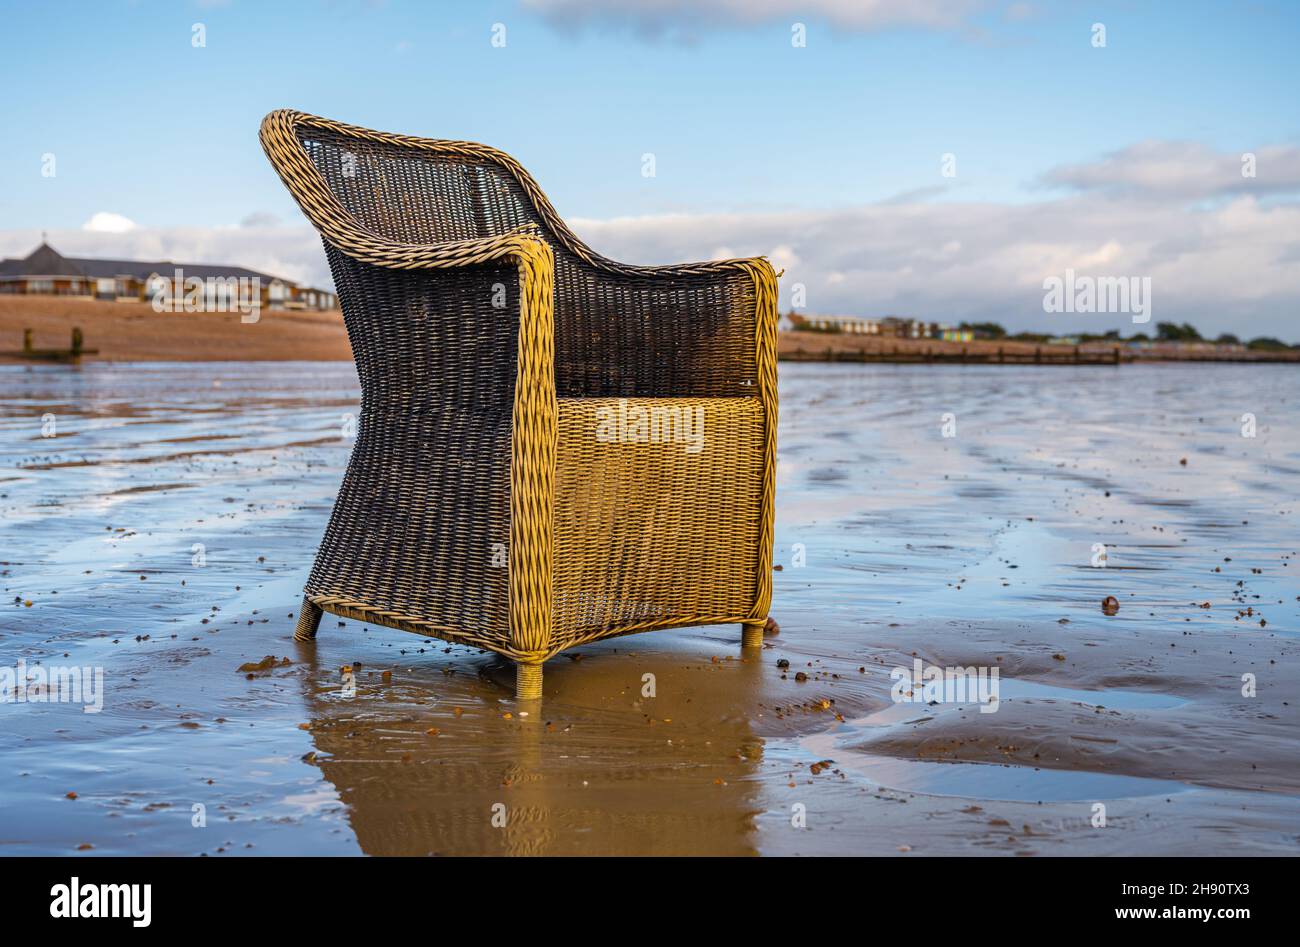 Vieux fauteuil jeté et indésirable sur une plage déserte au Royaume-Uni.Meubles abandonnés ou de la malbouffe de plage qui jonque une plage. Banque D'Images